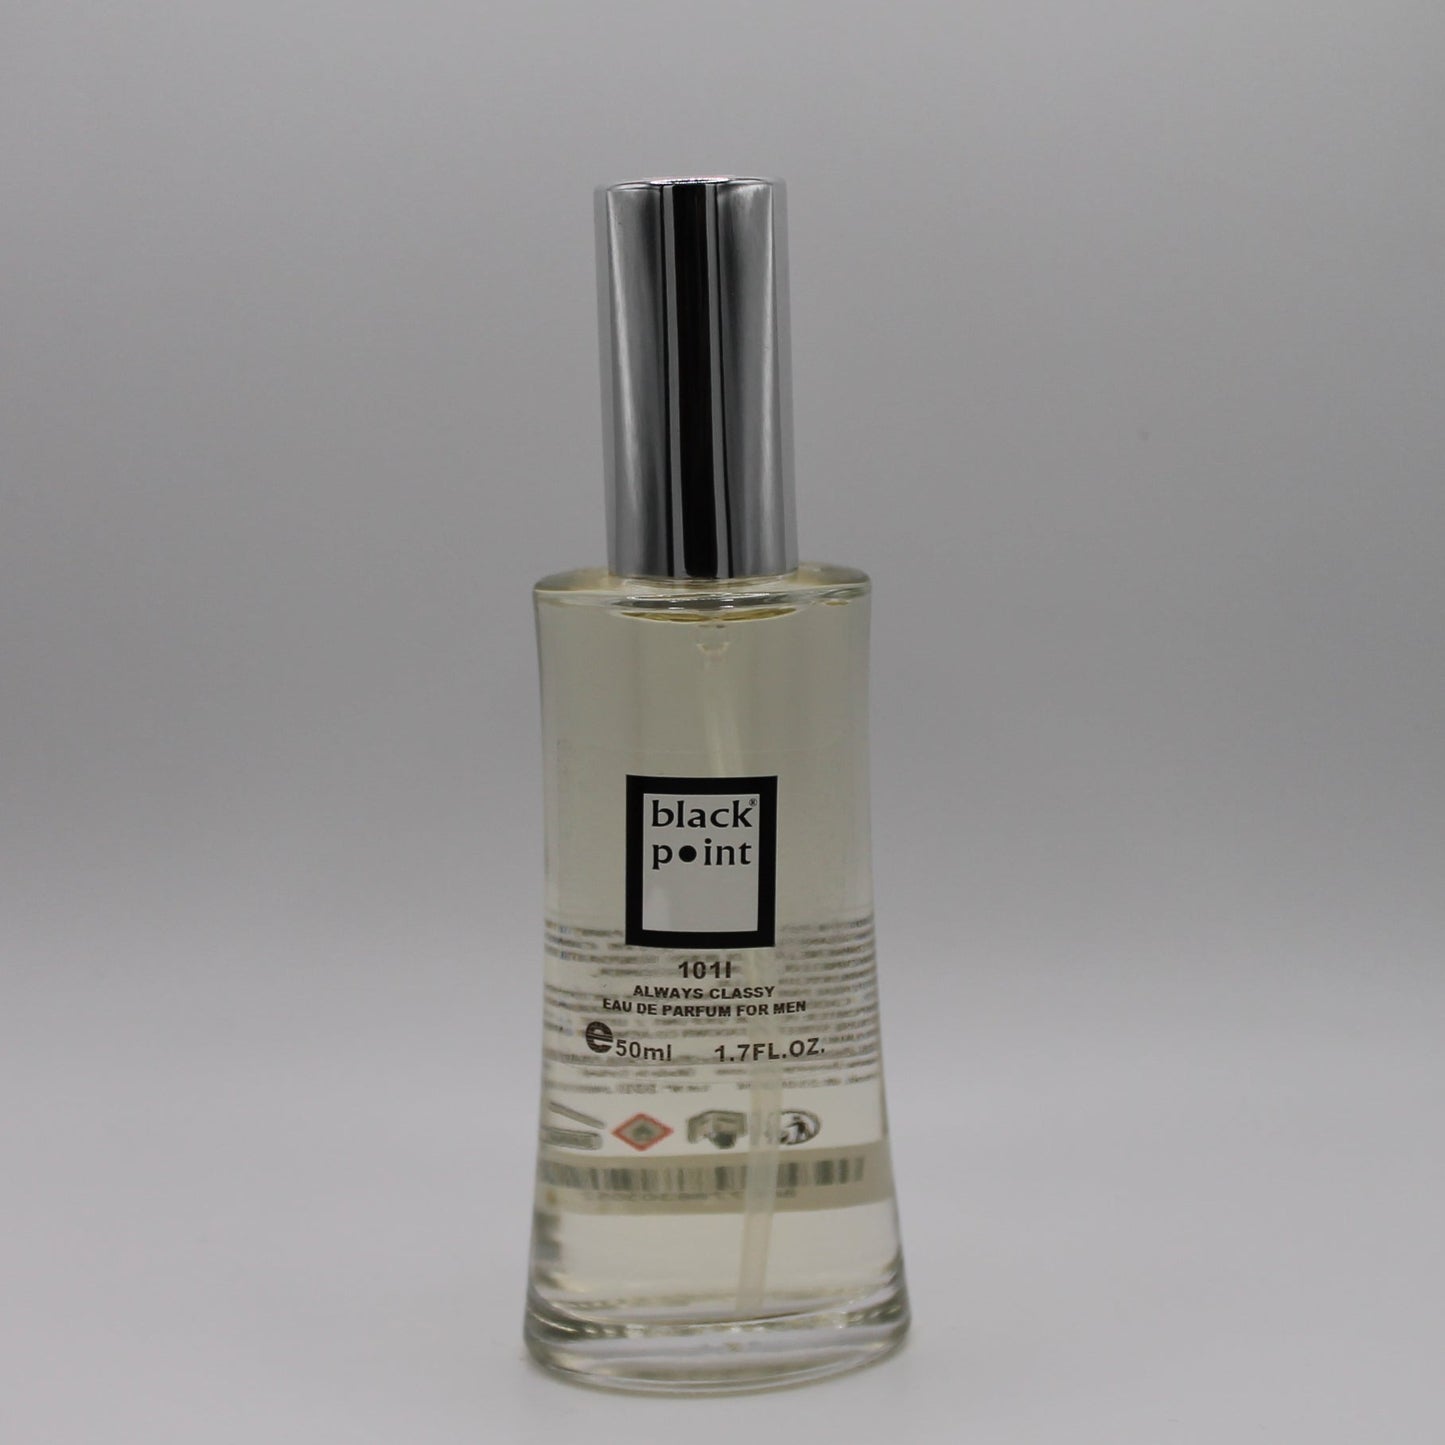 Black Leader Fragrance For Him - I101